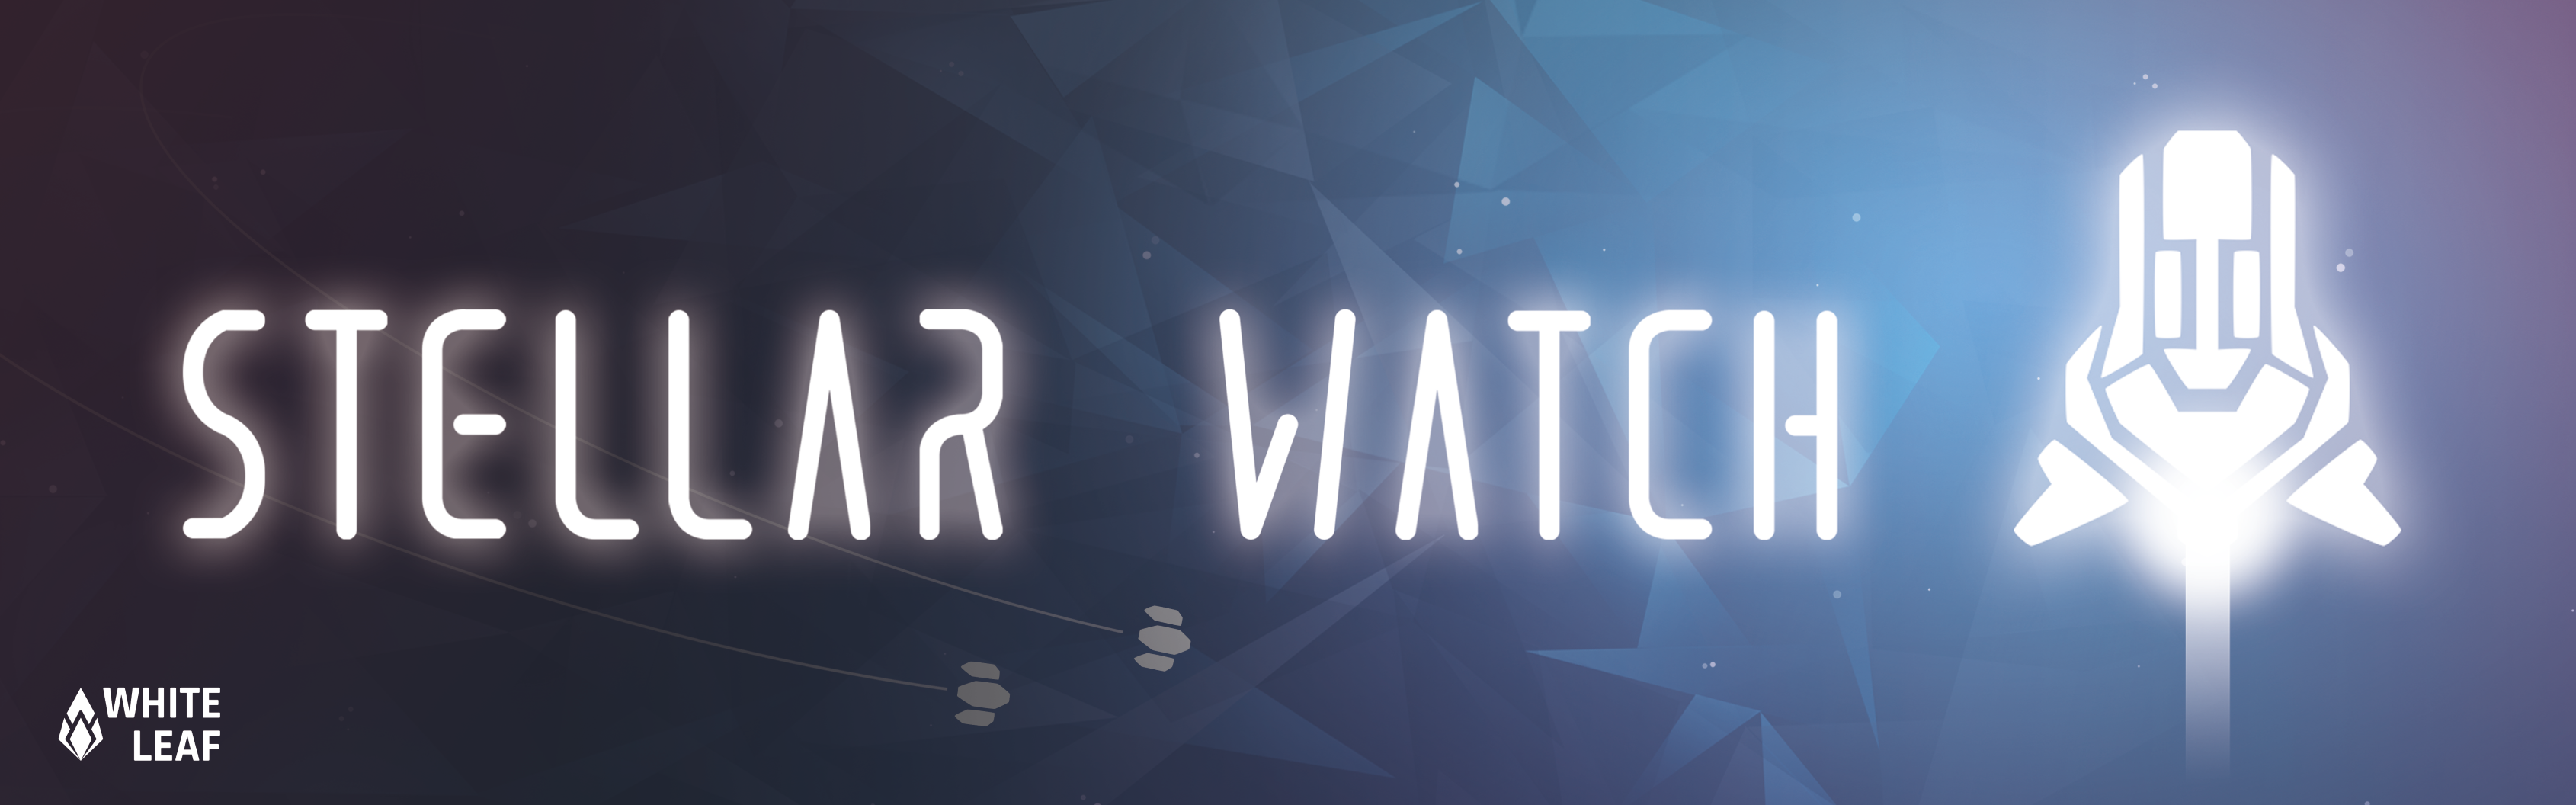 Stellar Watch: Demo